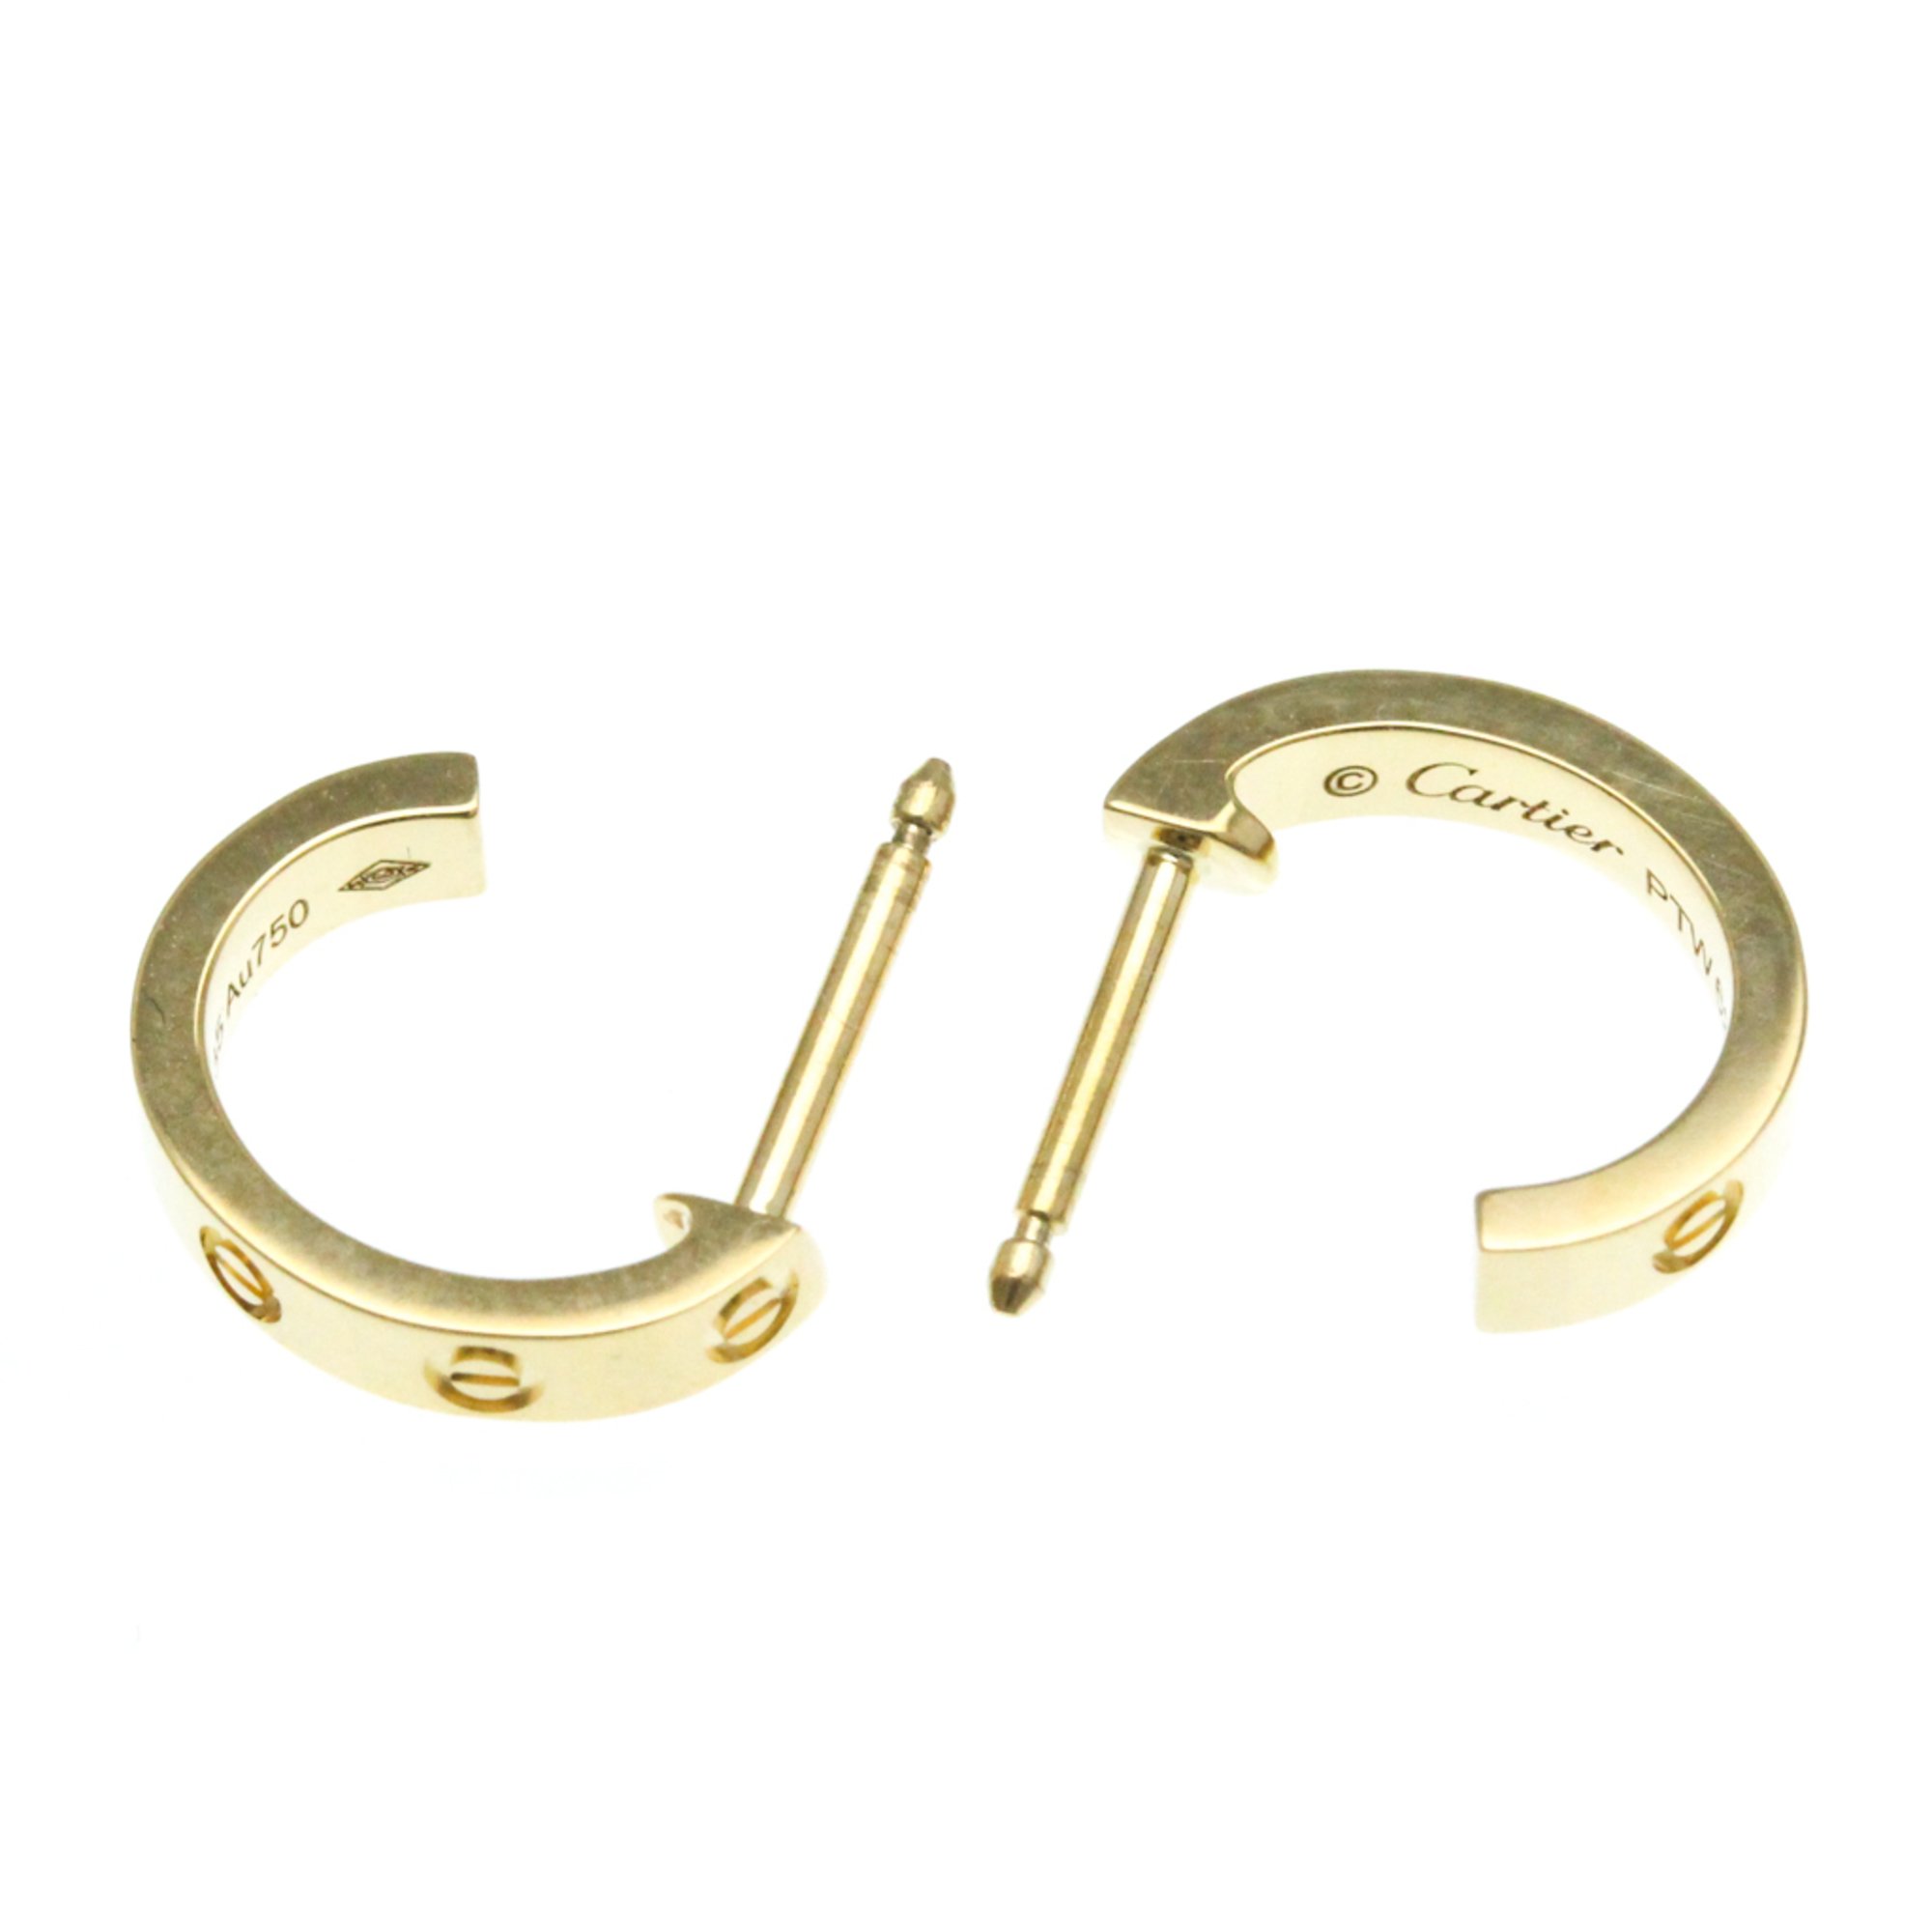 Cartier Mini Love Earrings No Stone Yellow Gold (18K) Half Hoop Earrings Gold